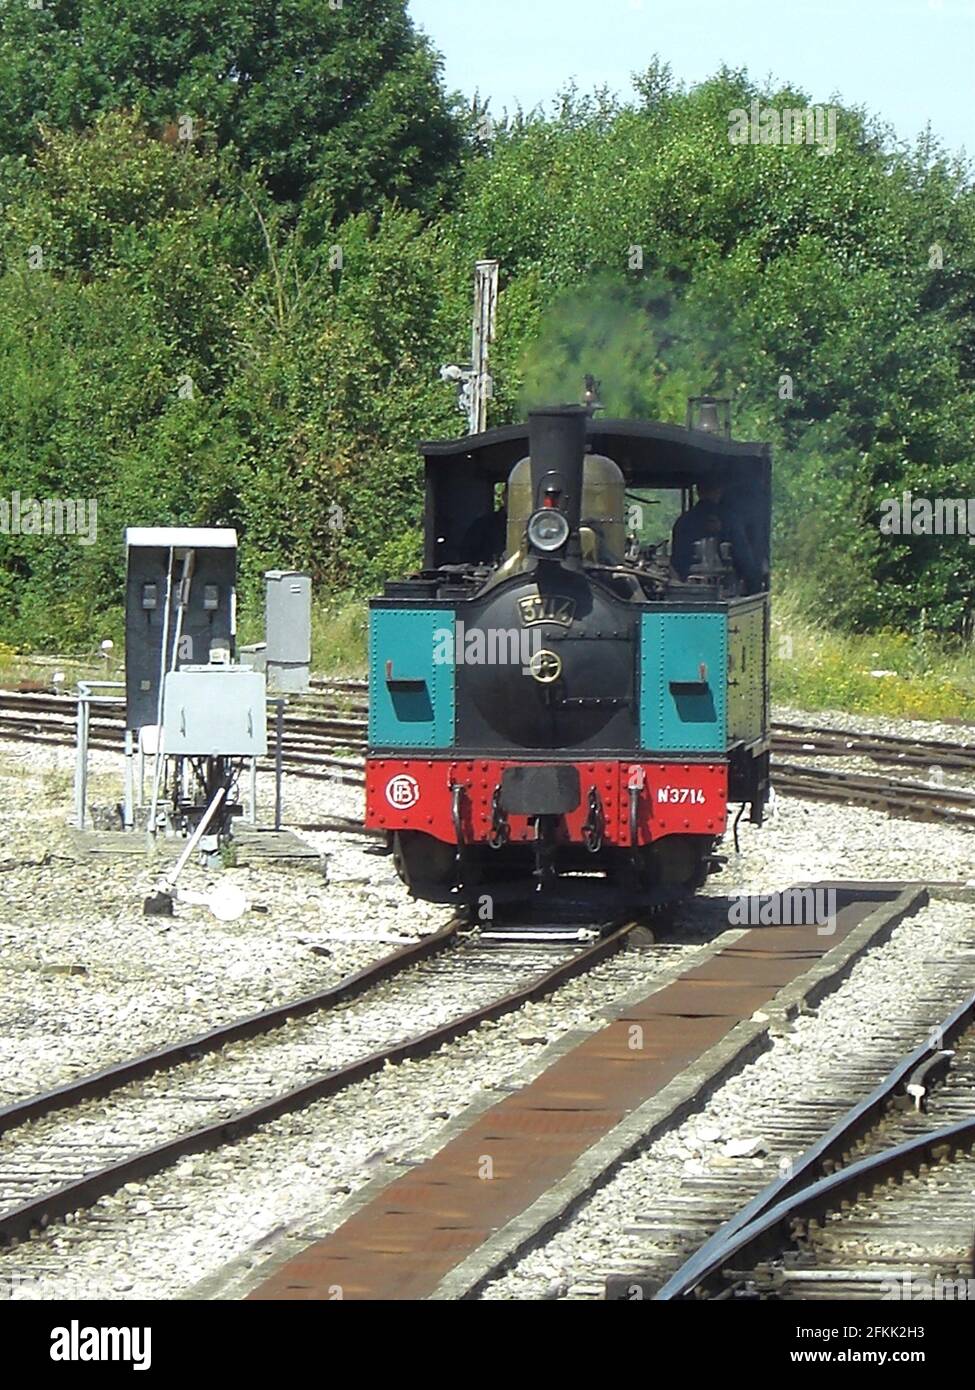 Le petit train à vapeur de la Baie de Somme Foto Stock